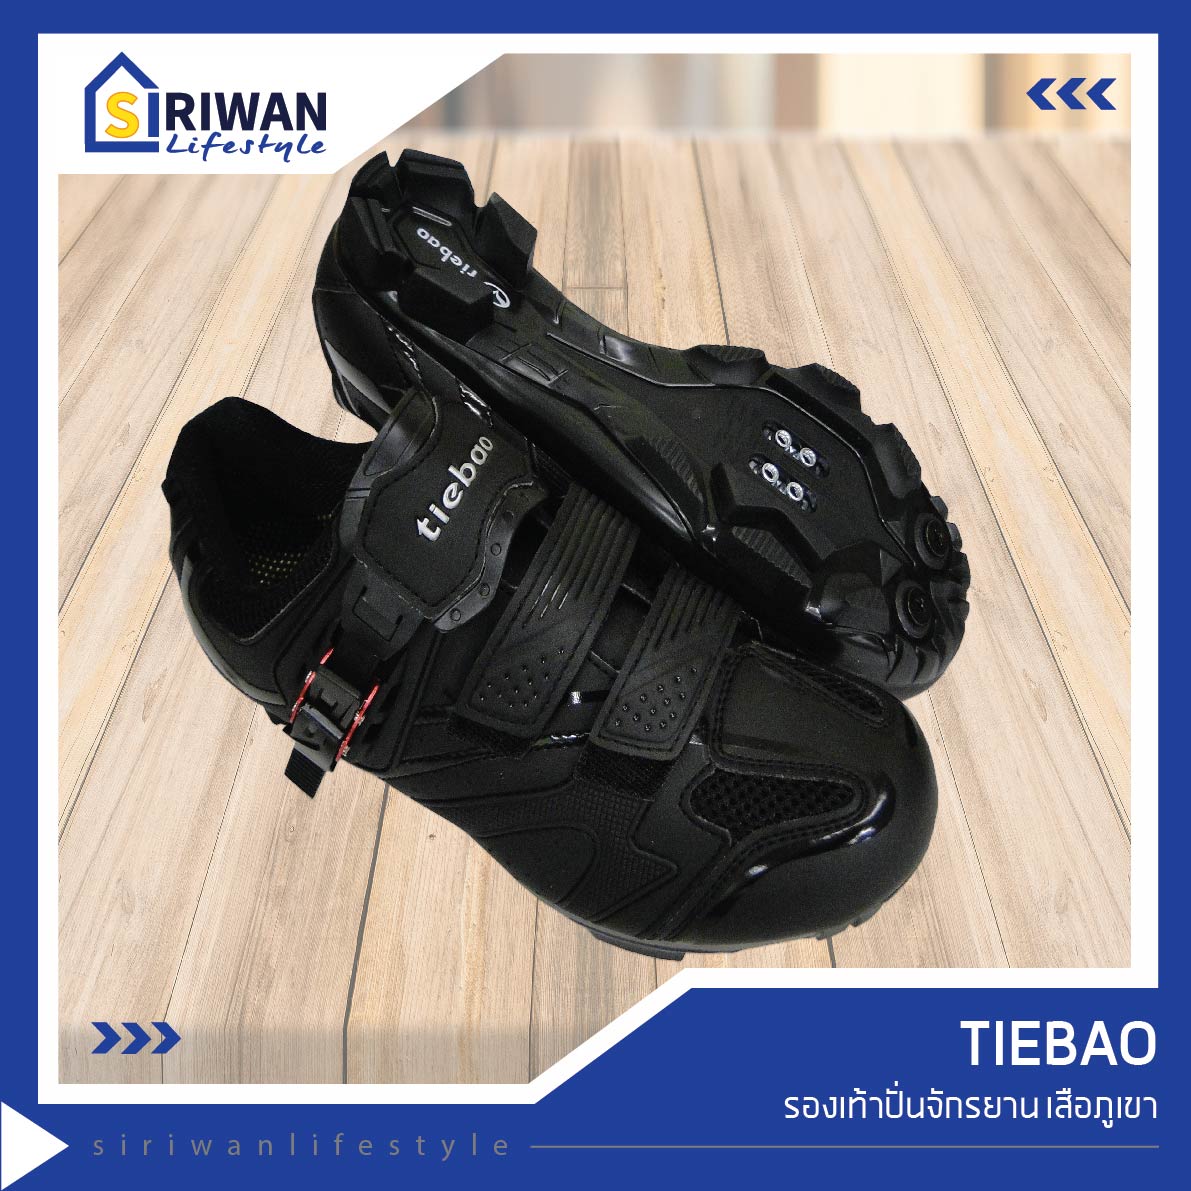 Tiebao รองเท้าปั่นจักรยาน เสือภูเขา สีดำ/เงิน  รุ่นTB15-B1413